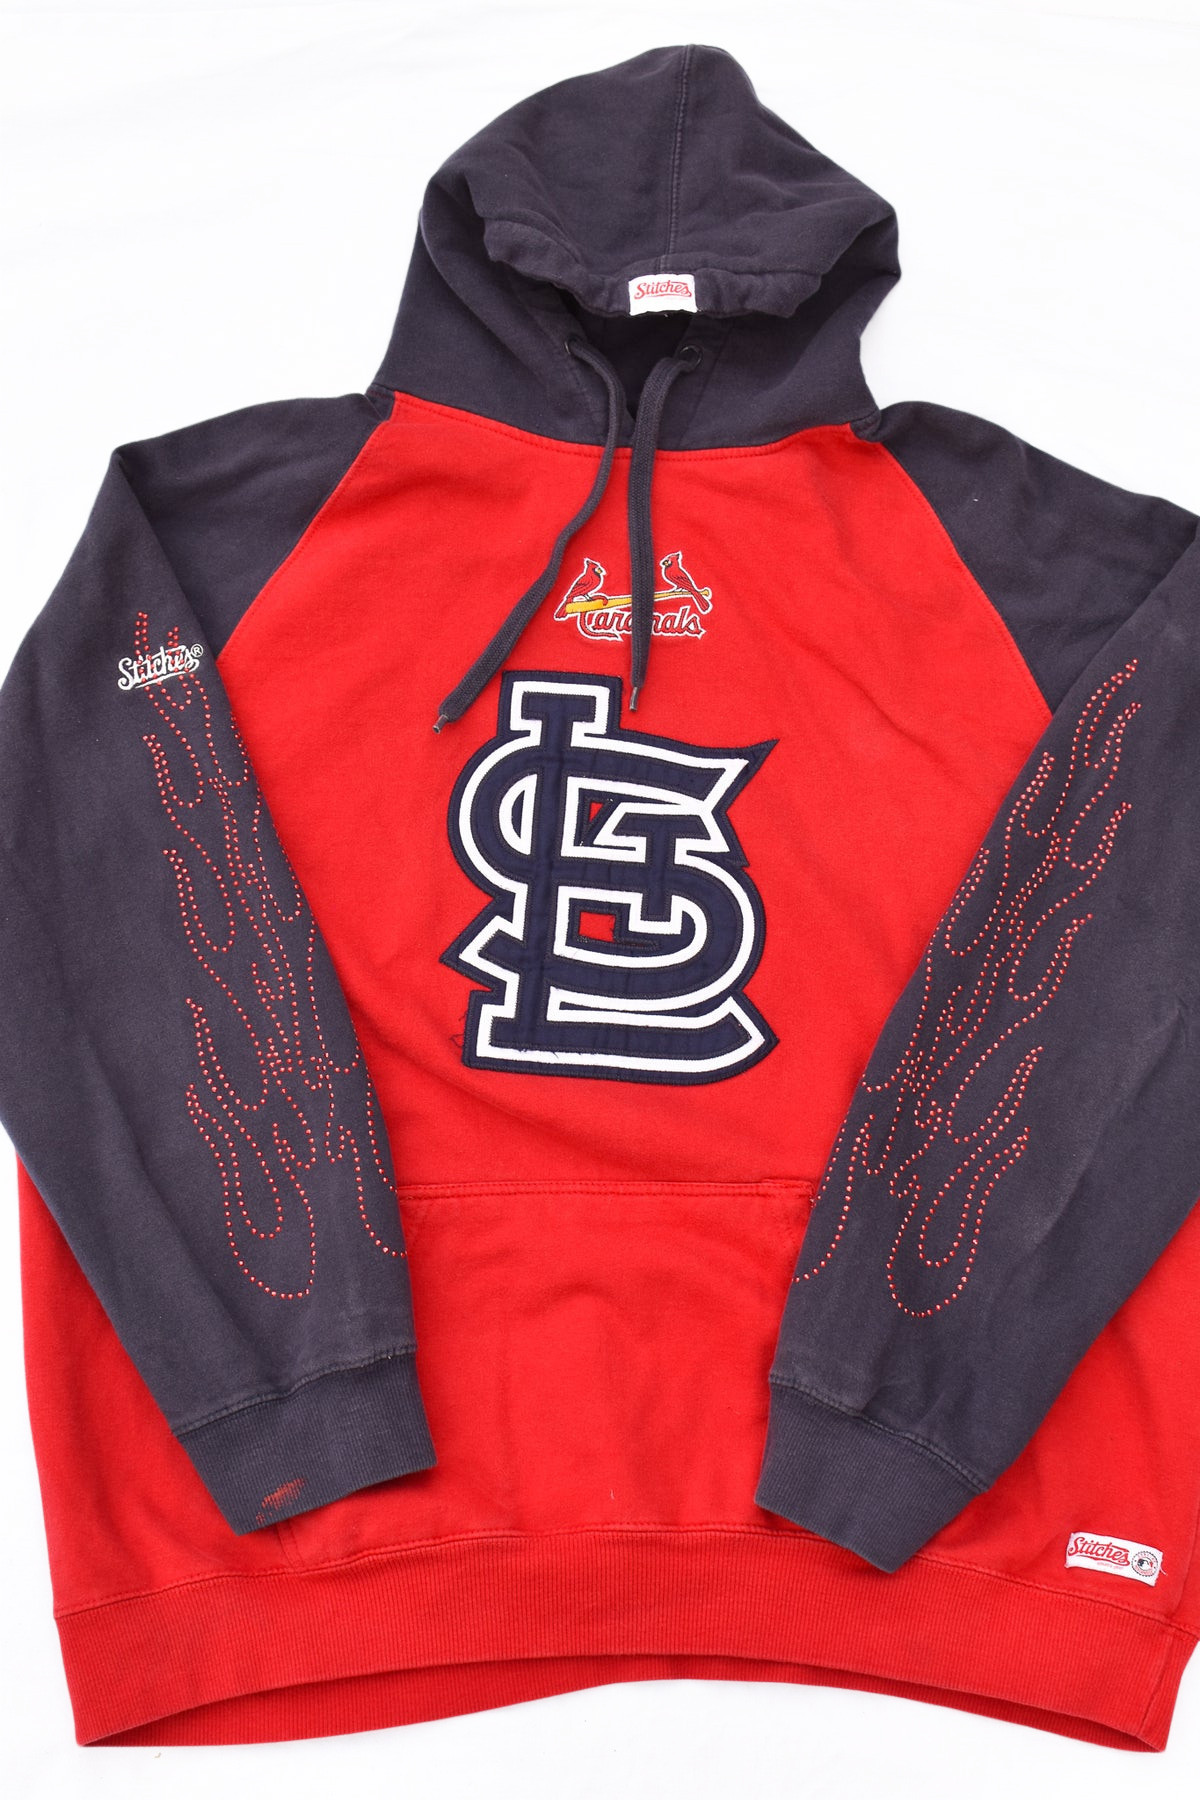 Stitches Red St. Louis Cardinals Logo Sweatshirt